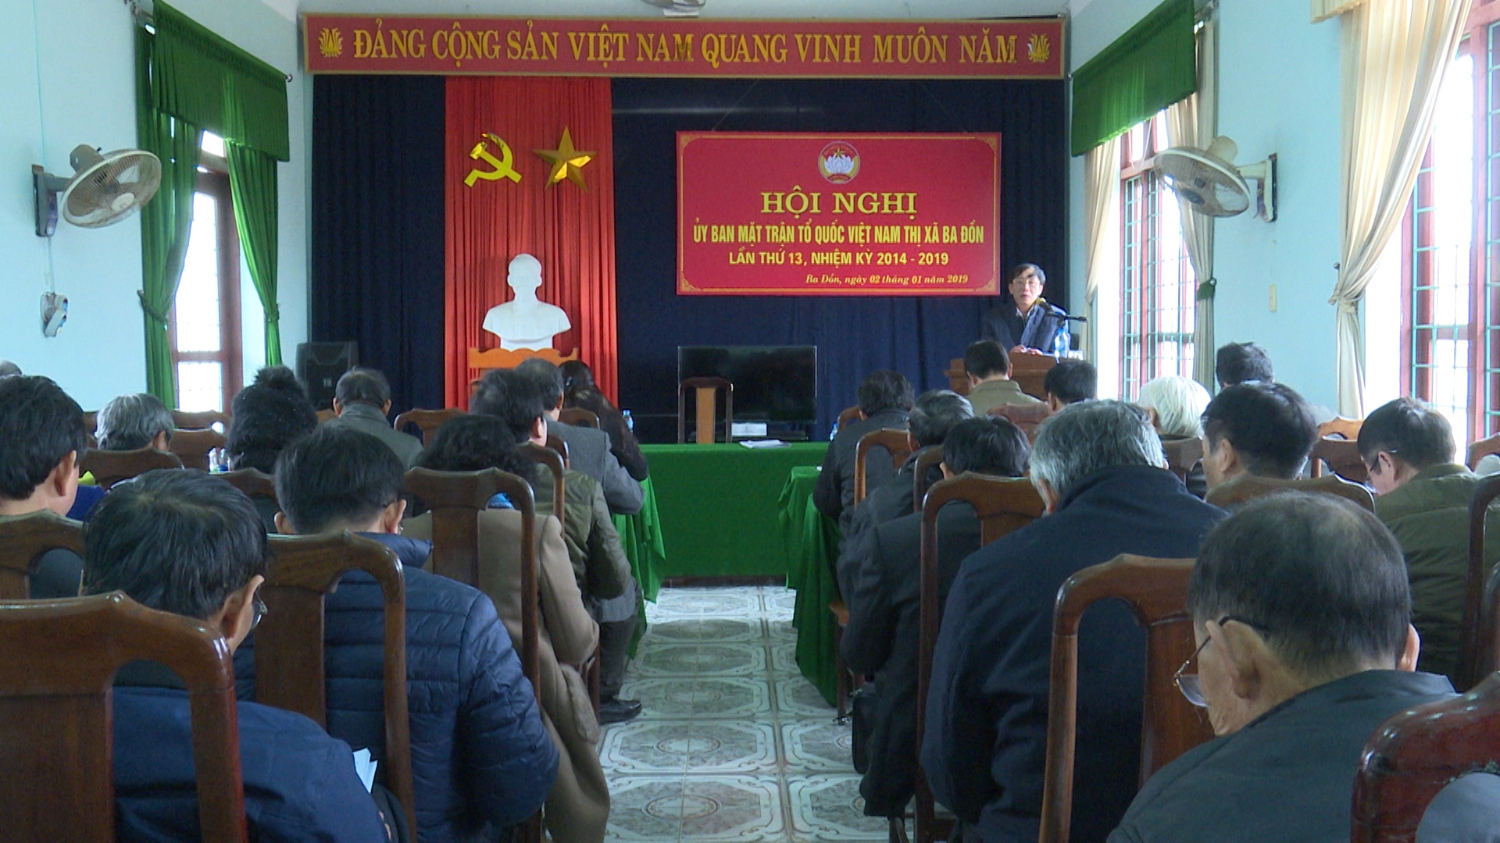 Hội nghị Uỷ ban Mặt trận Tổ quốc Việt Nam thị xã Ba Đồn lần thứ 13, nhiệm kỳ 2014-2019.